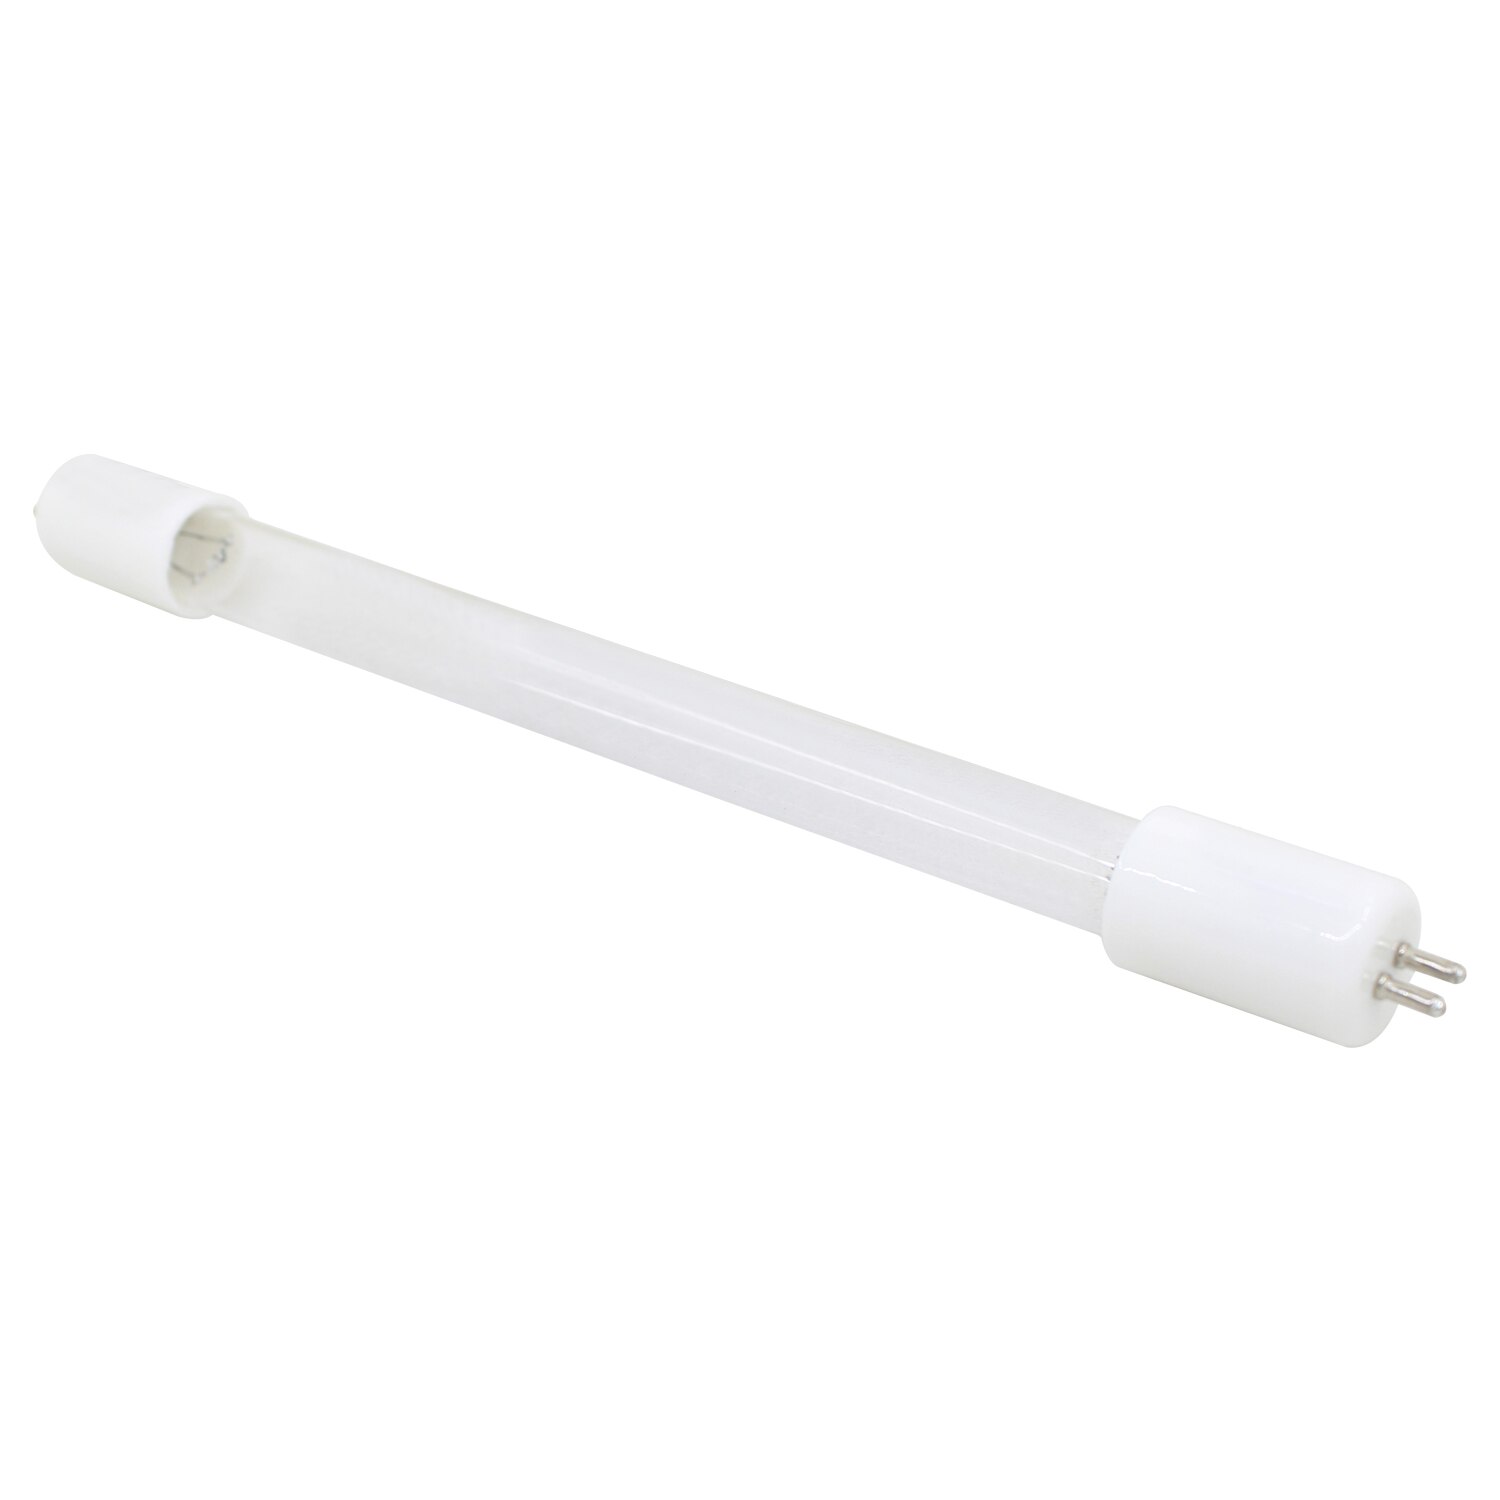 UV 조명 소독 램프 1 개 가정용 상업용 살균 램프 튜브, 오존 uv 램프, 석영 UV 램프 교체